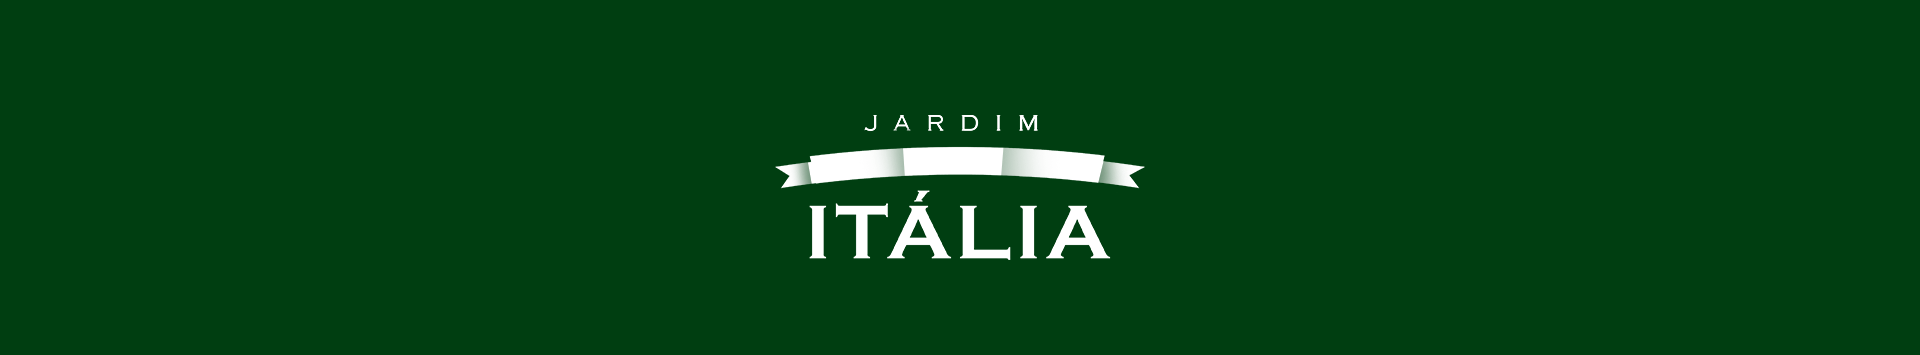 JARDIM ITÁLIA